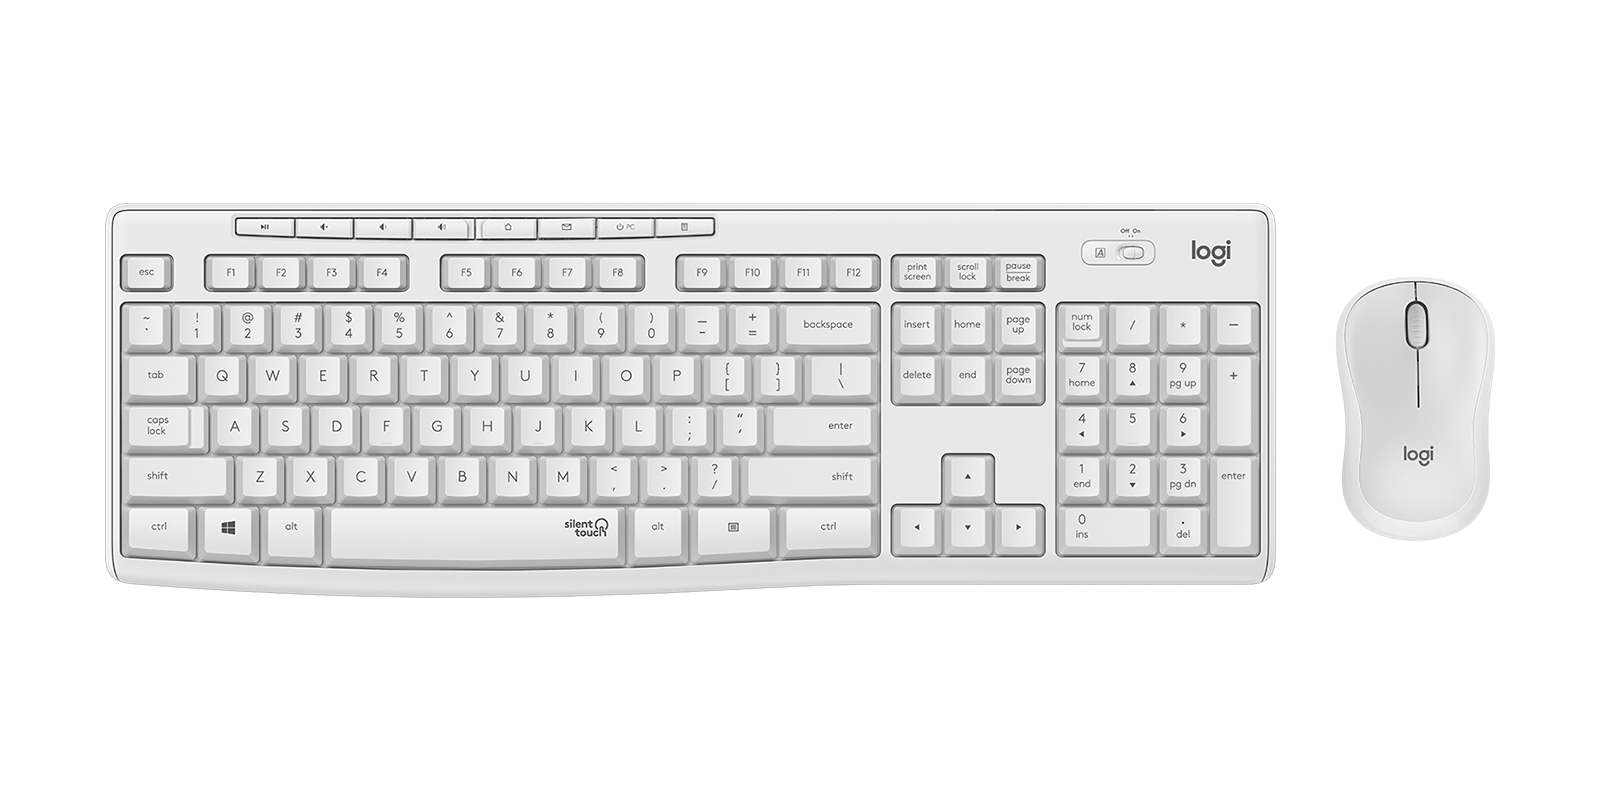 Logitech MK295 Silent ensemble souris et clavier sans fil avec technologie  SilentTouch, pavé numérique taille standard, réactivité instantanée sans